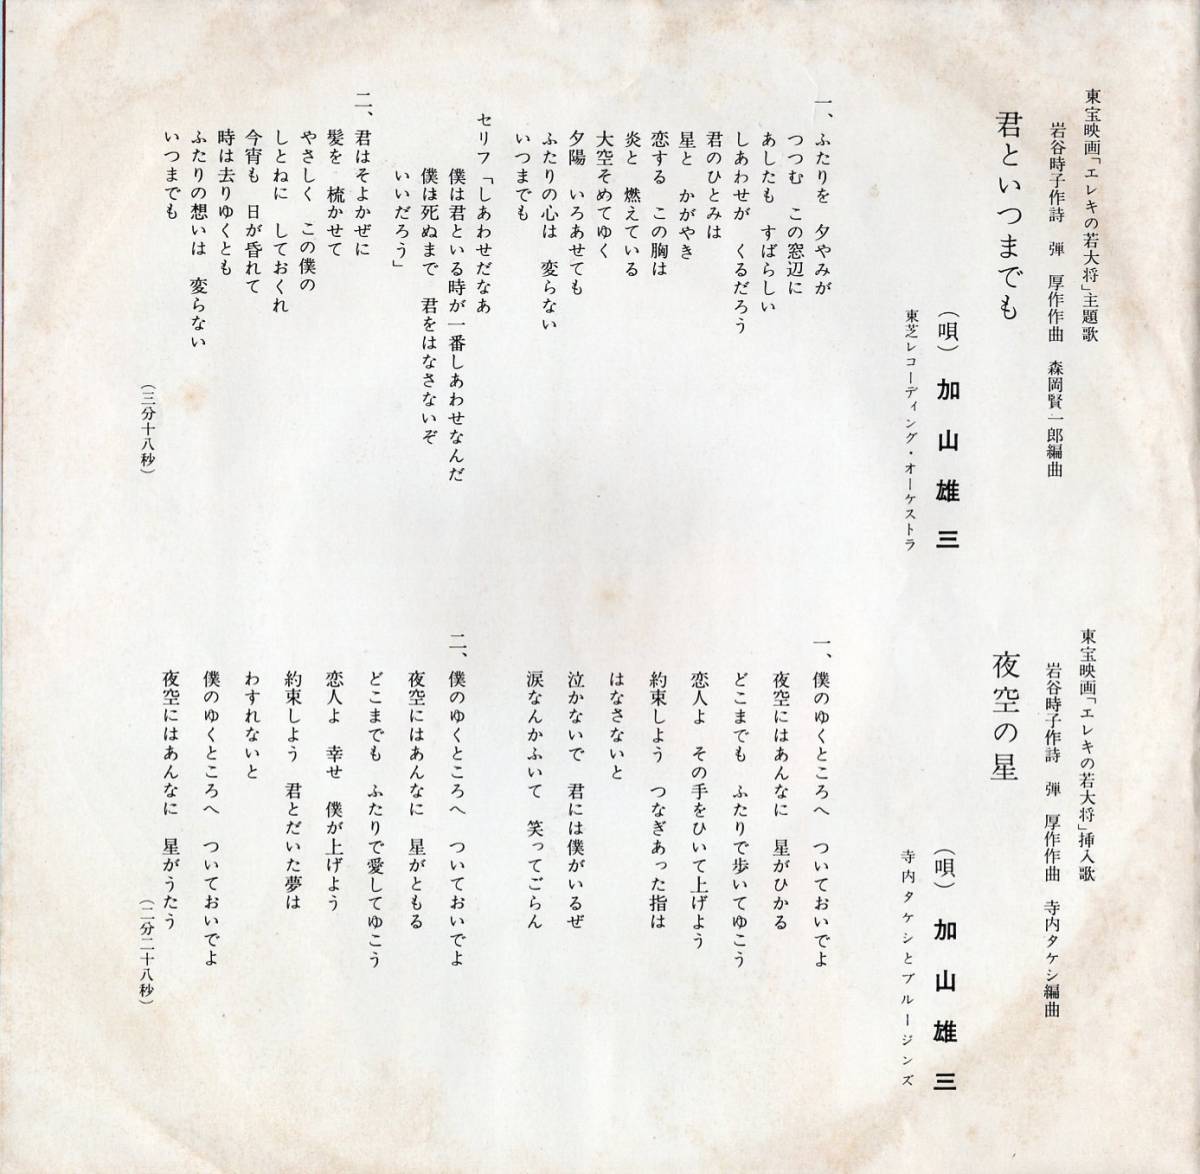 1960年代 東芝見本盤レーベル ガリ版 謄写版印刷 レコード⑧ 加山雄三 君といつまでも・夜空の星 シングルレコード TP-1190 モノ 昭和歌謡_画像3